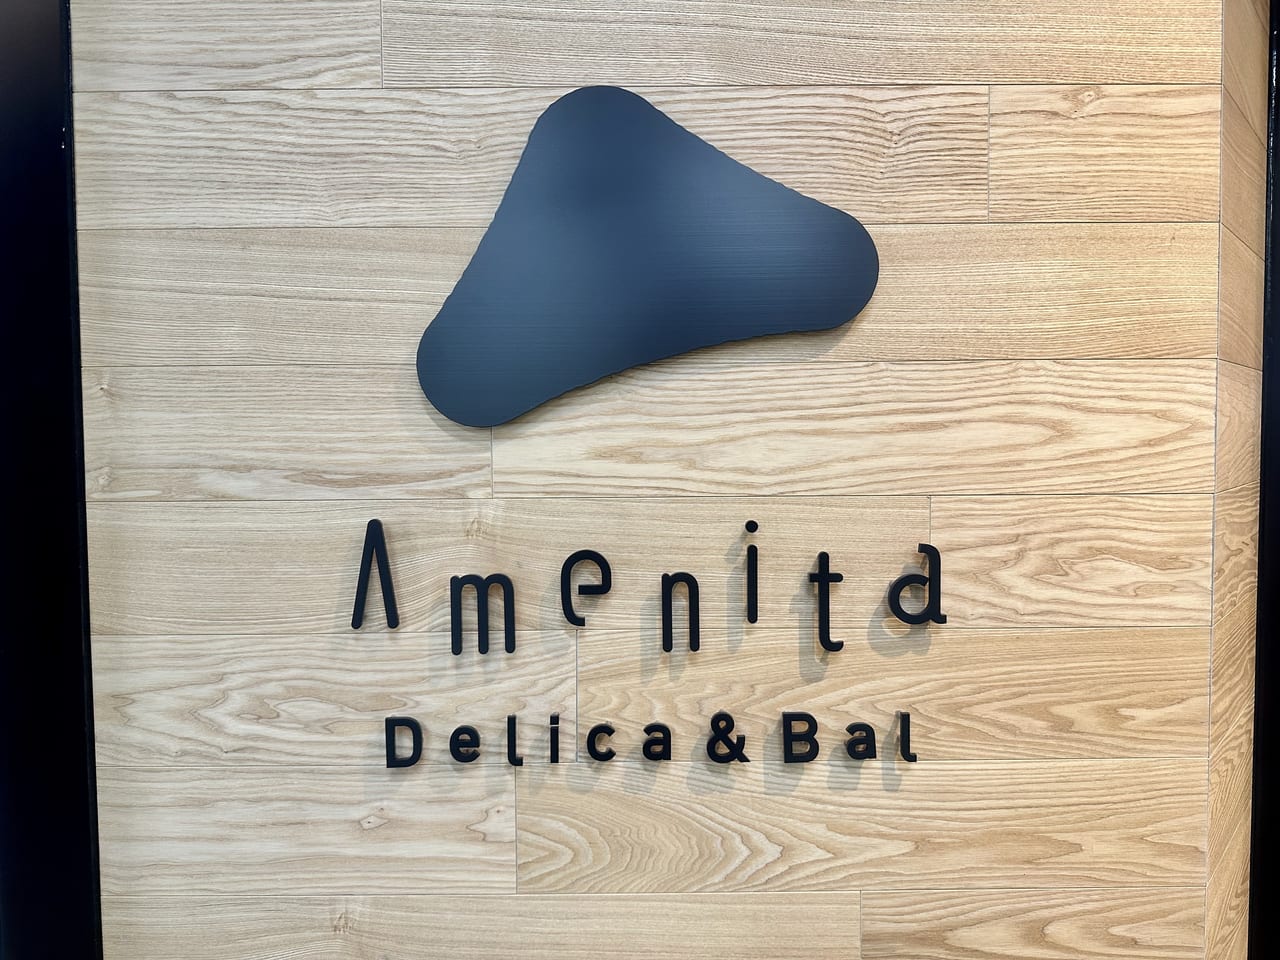 2023年「Delica & Bal Amenita（デリカ&バル アメニータ）」